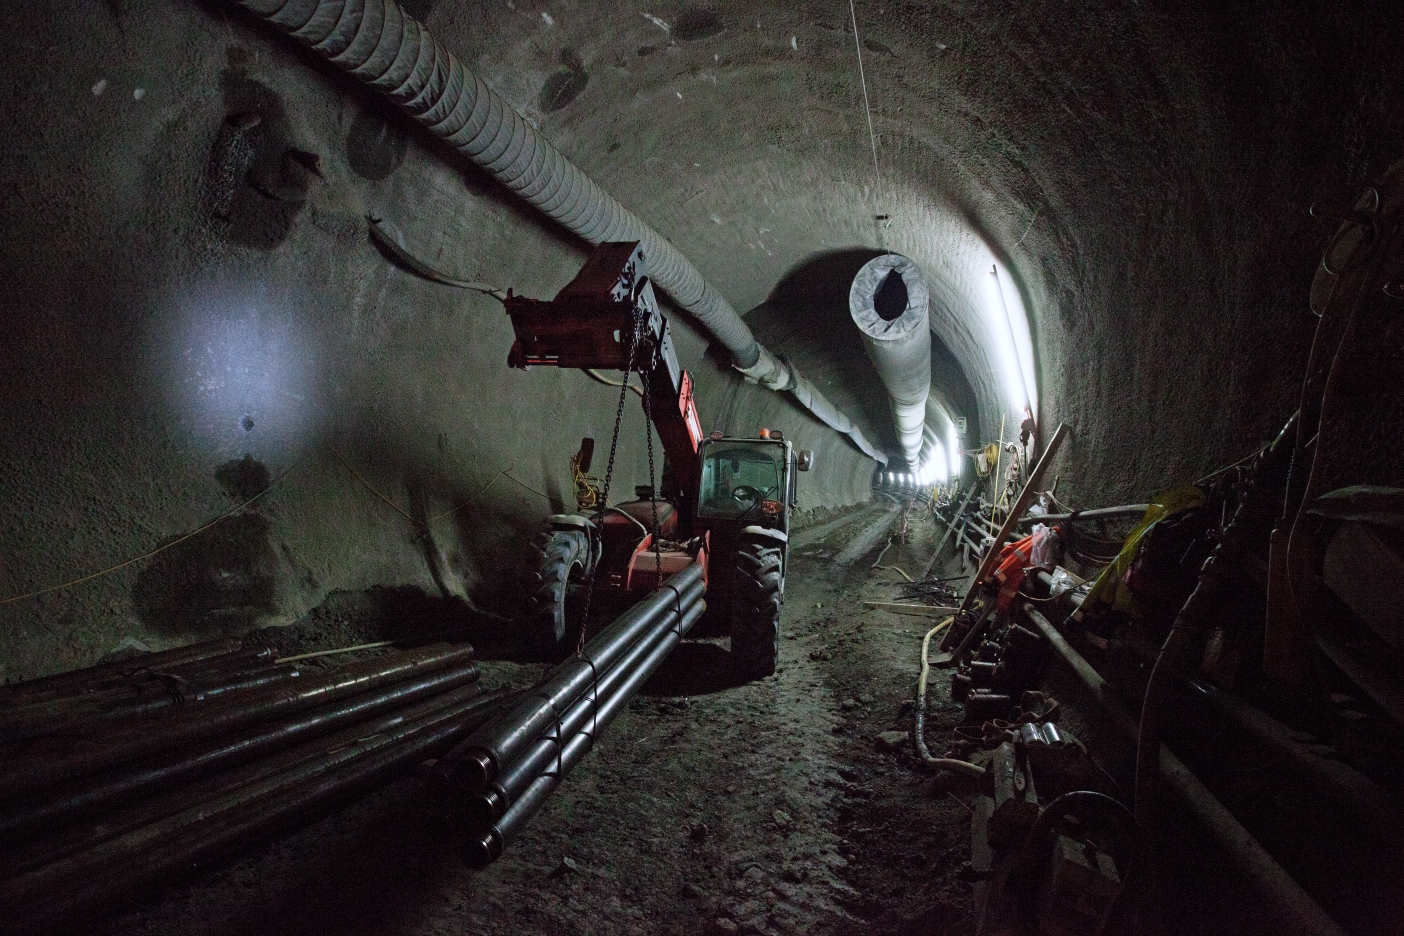 U-Bahn Bauabschnitt U1 Alaudagasse, arbeiten im Tunnel,Dez.2013